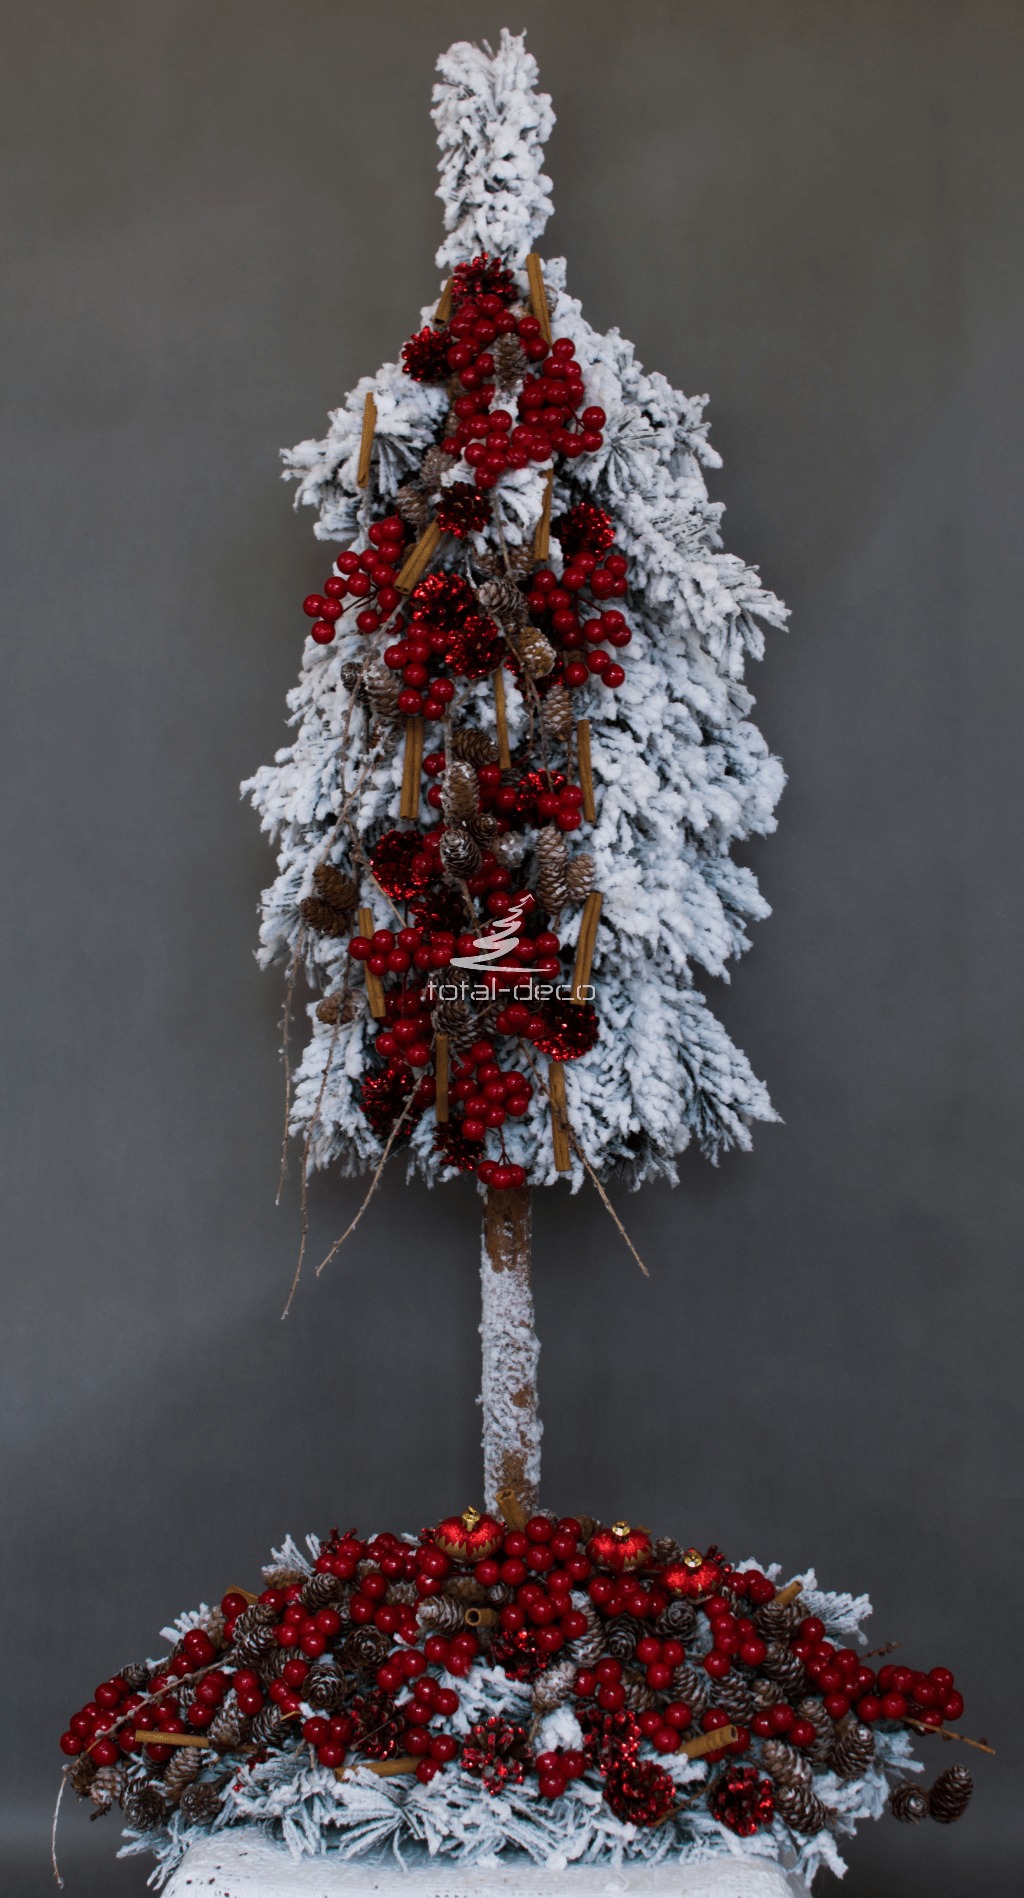 Zestaw świąteczny bożonarodzeniowy bieały czerwony nowoczesny w komplecie ze stroikiem oproszone śniegiem dekoracjie bożonarodzeniowe nowoczesne ozdoby świąteczne choinka na pniu bielona biała